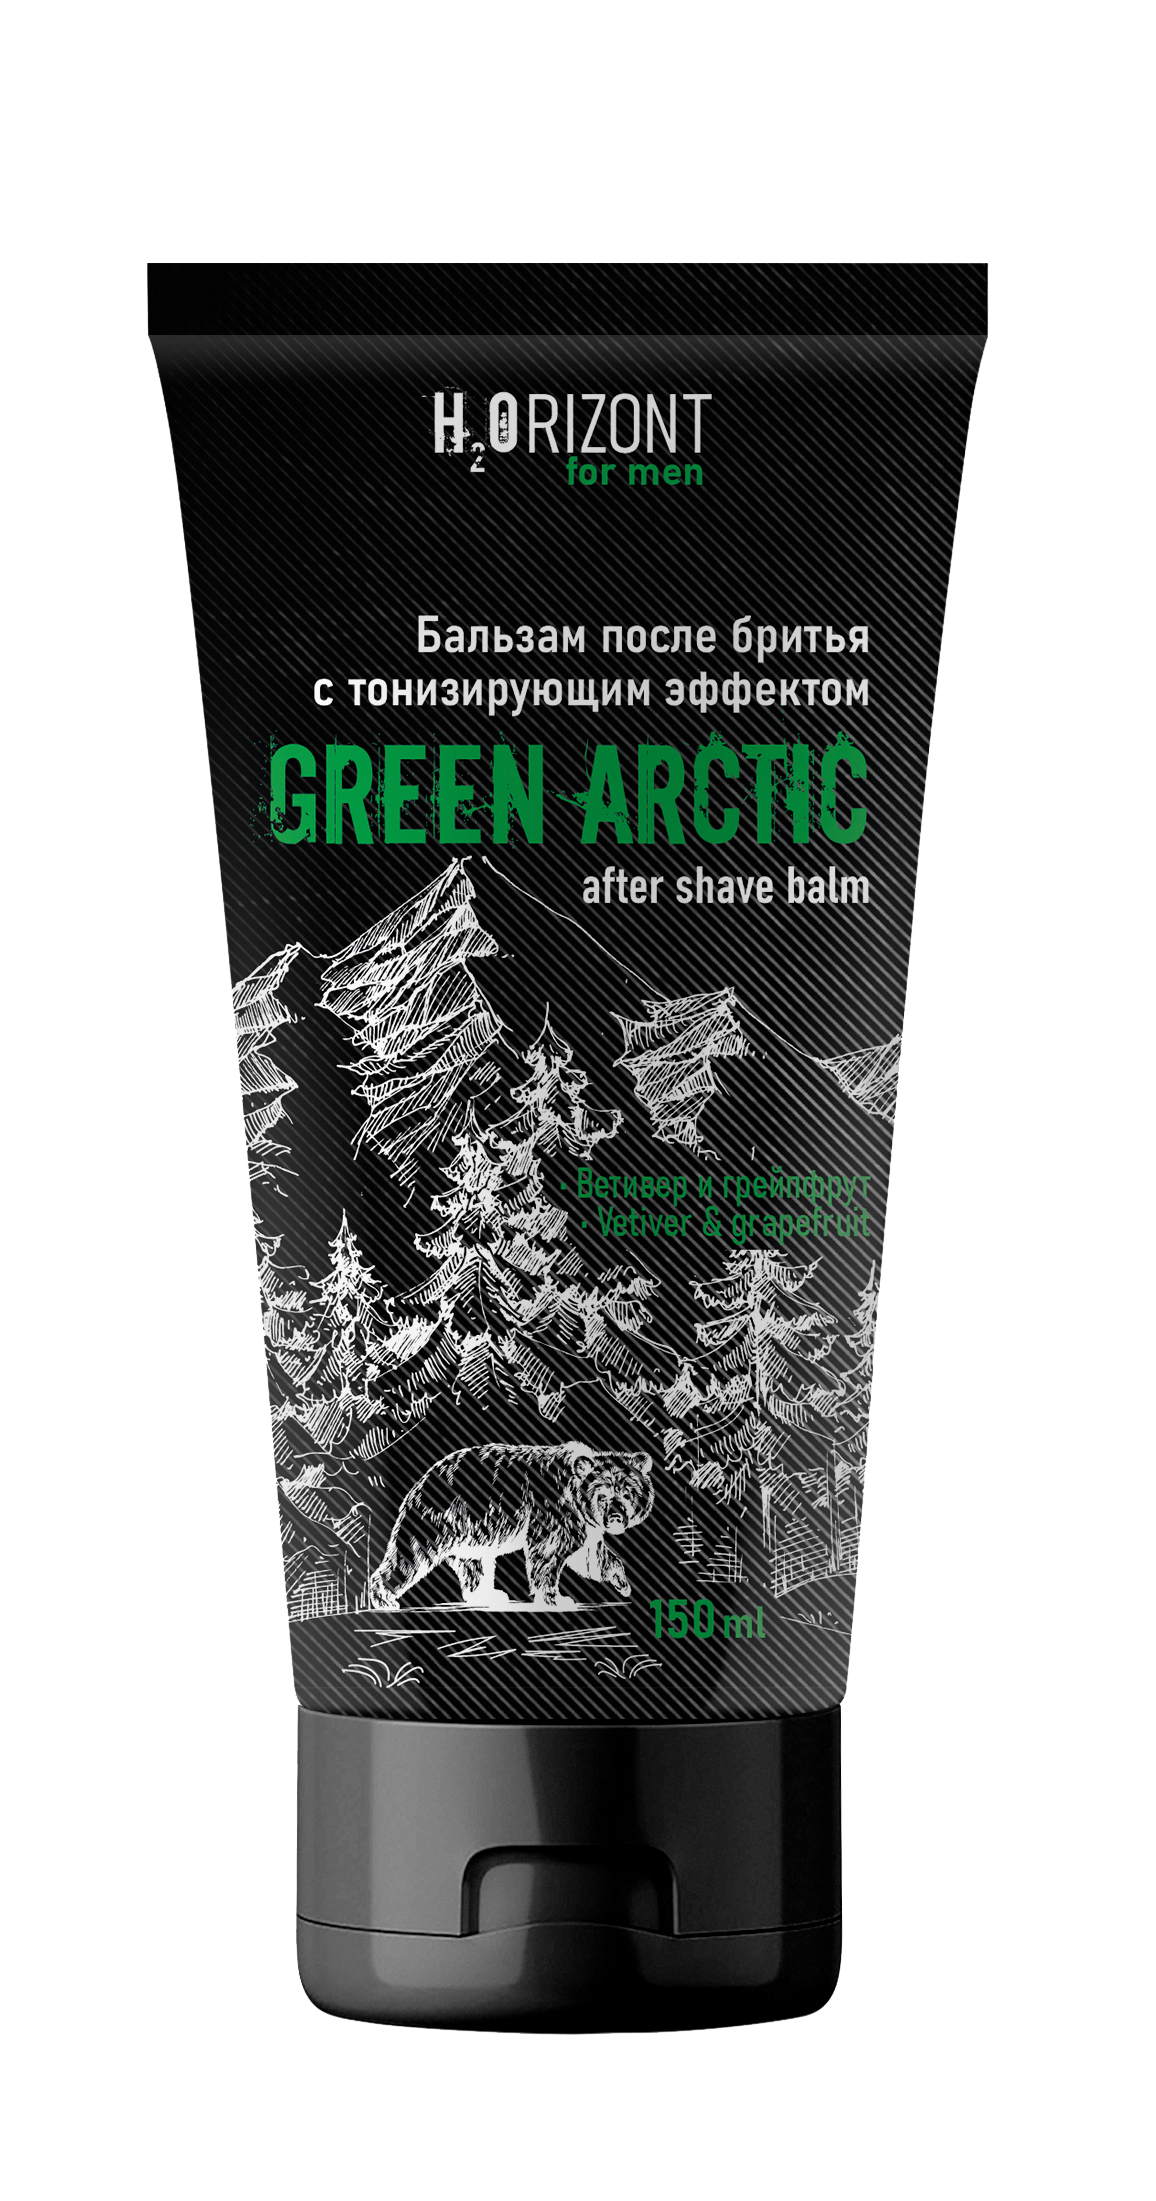 Бальзам после бритья FAMILY COSMETICS тонизирующий эффект Green Arctic, 150 мл бальзам мужской пластик